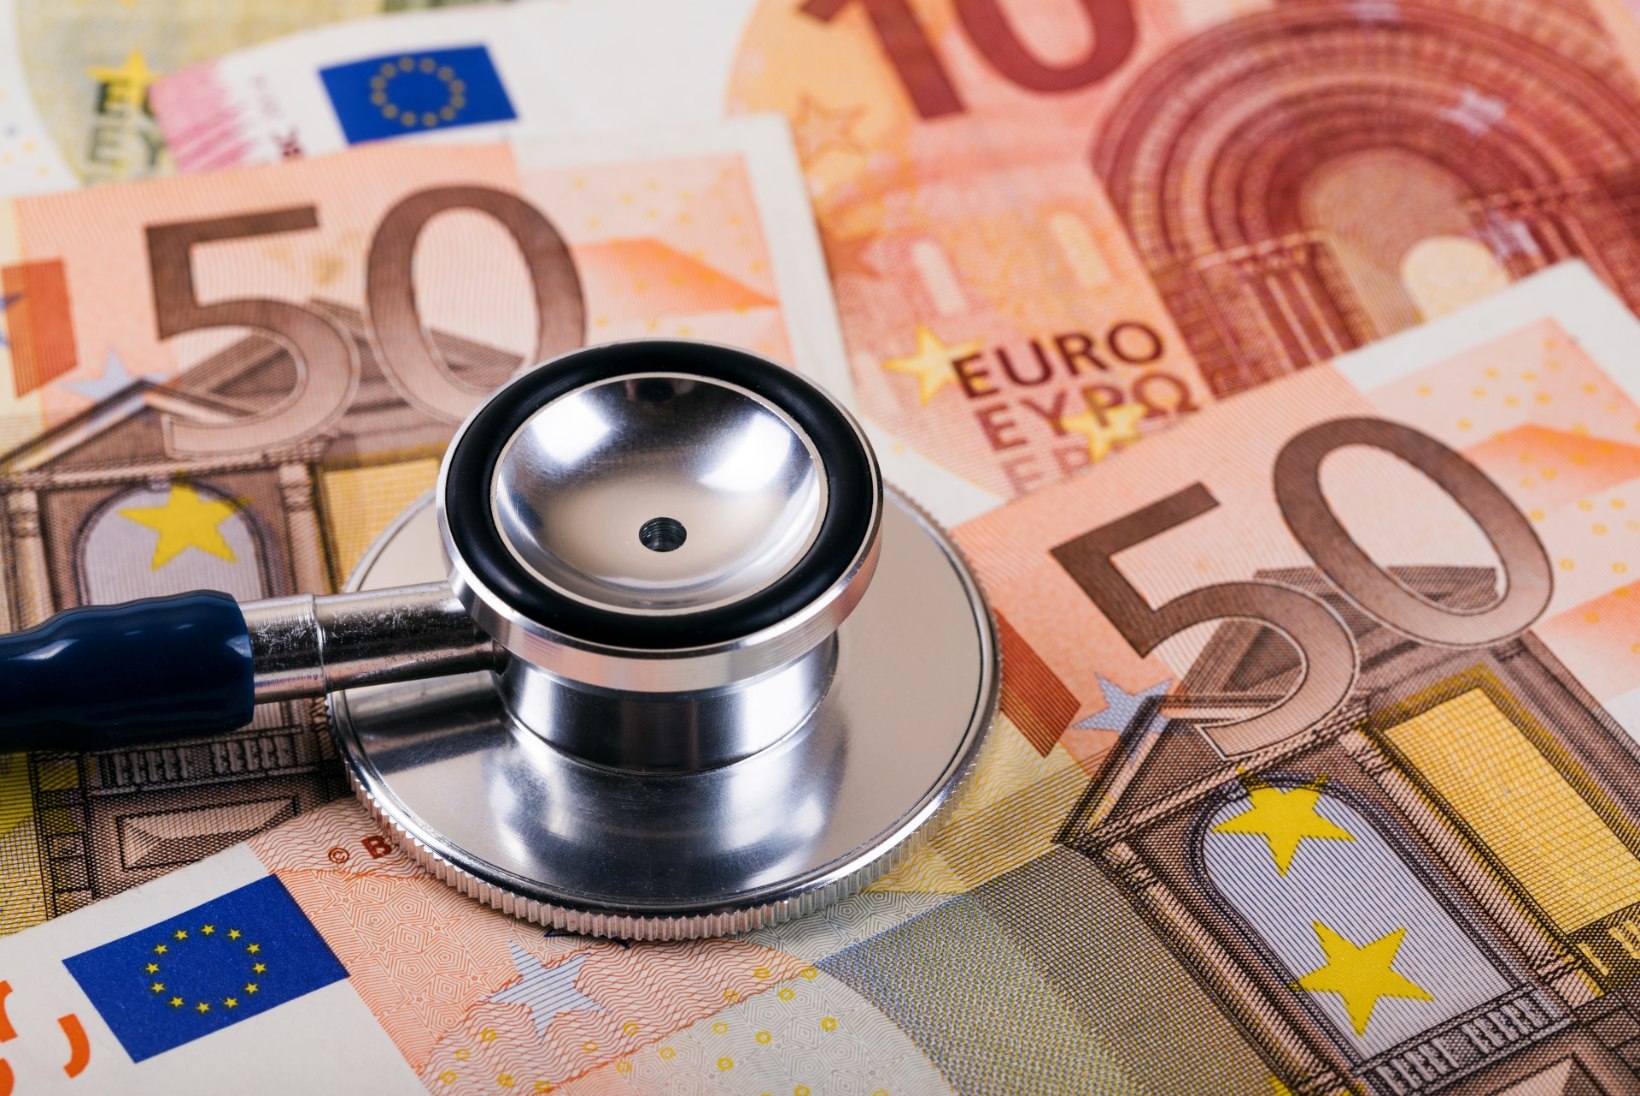 Kliinikumi patsiendid võlgnevad haiglale pea 200 000 eurot